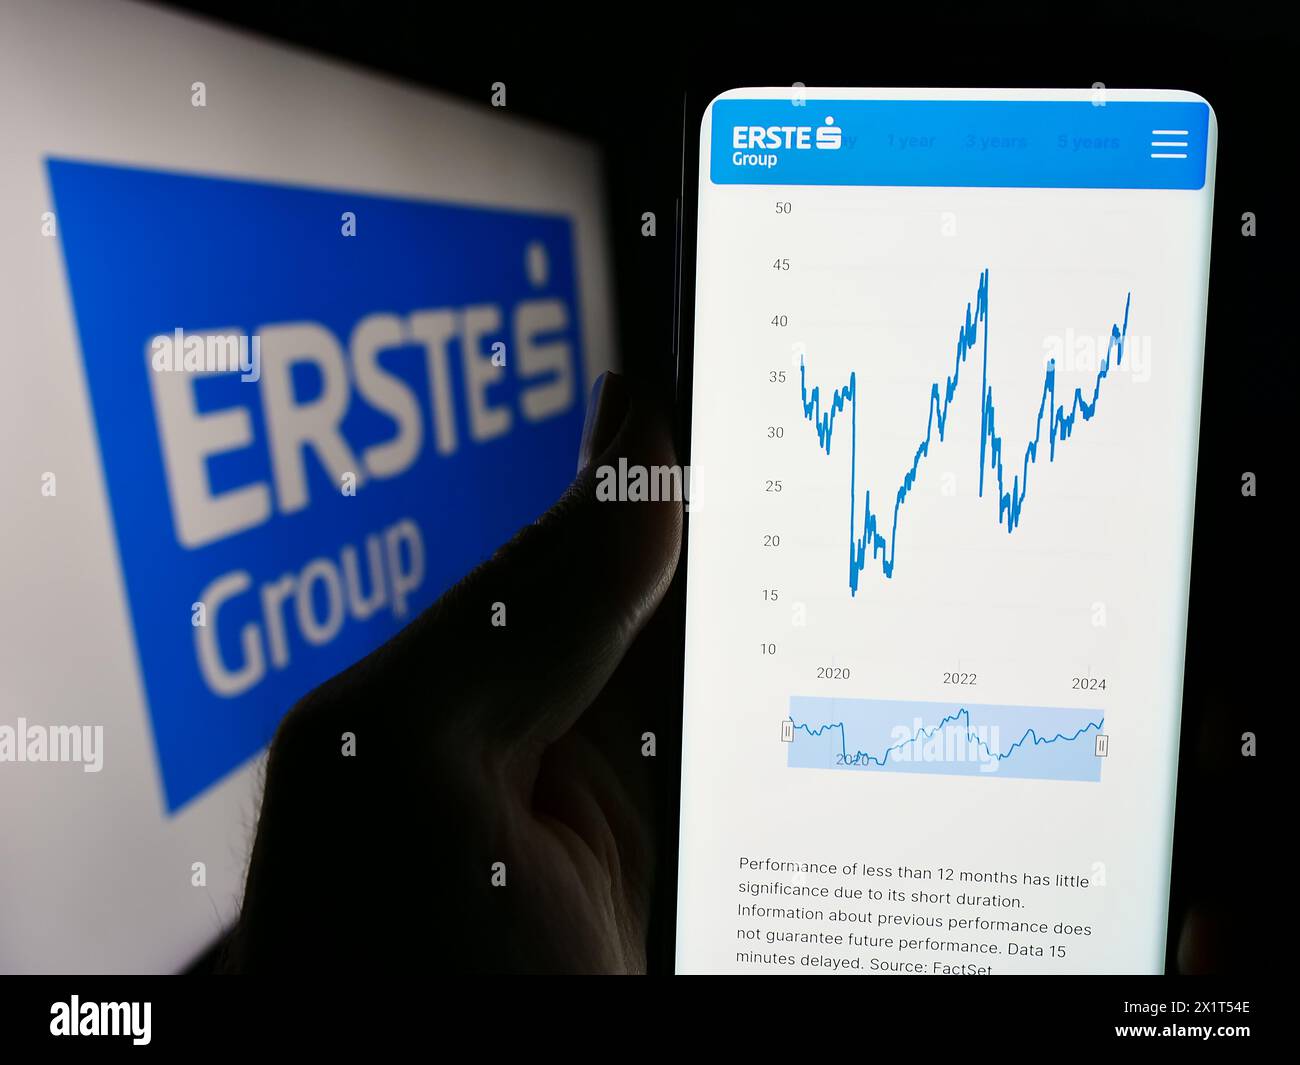 Persona che detiene il cellulare con il sito web della società austriaca di servizi finanziari Erste Group Bank AG con il logo. Messa a fuoco al centro del display del telefono. Foto Stock